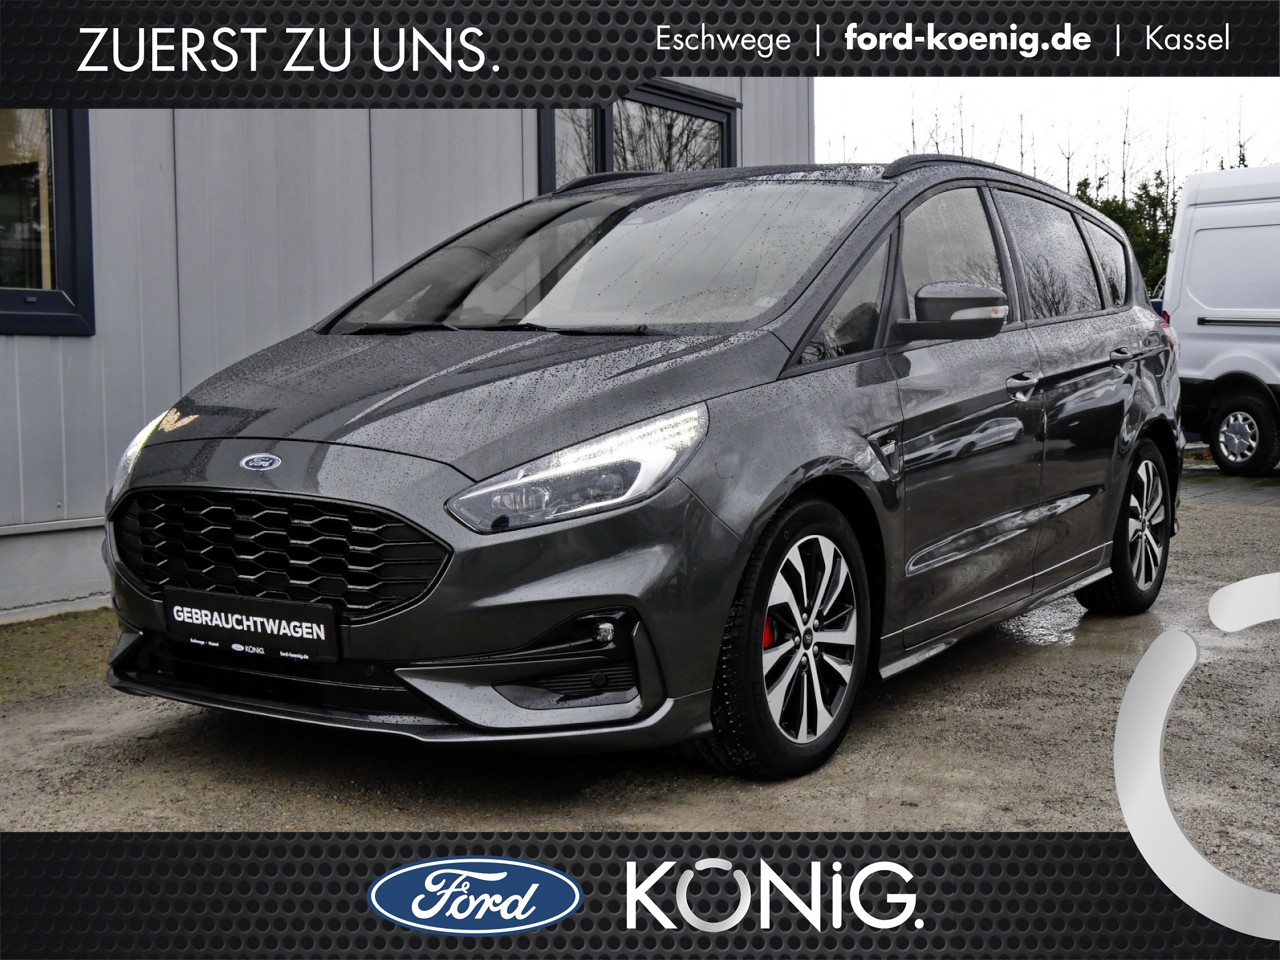 Ford Händler Gebrauchtwagen-Suche  König am Hessenring GmbH & Co. KG  Eschwege